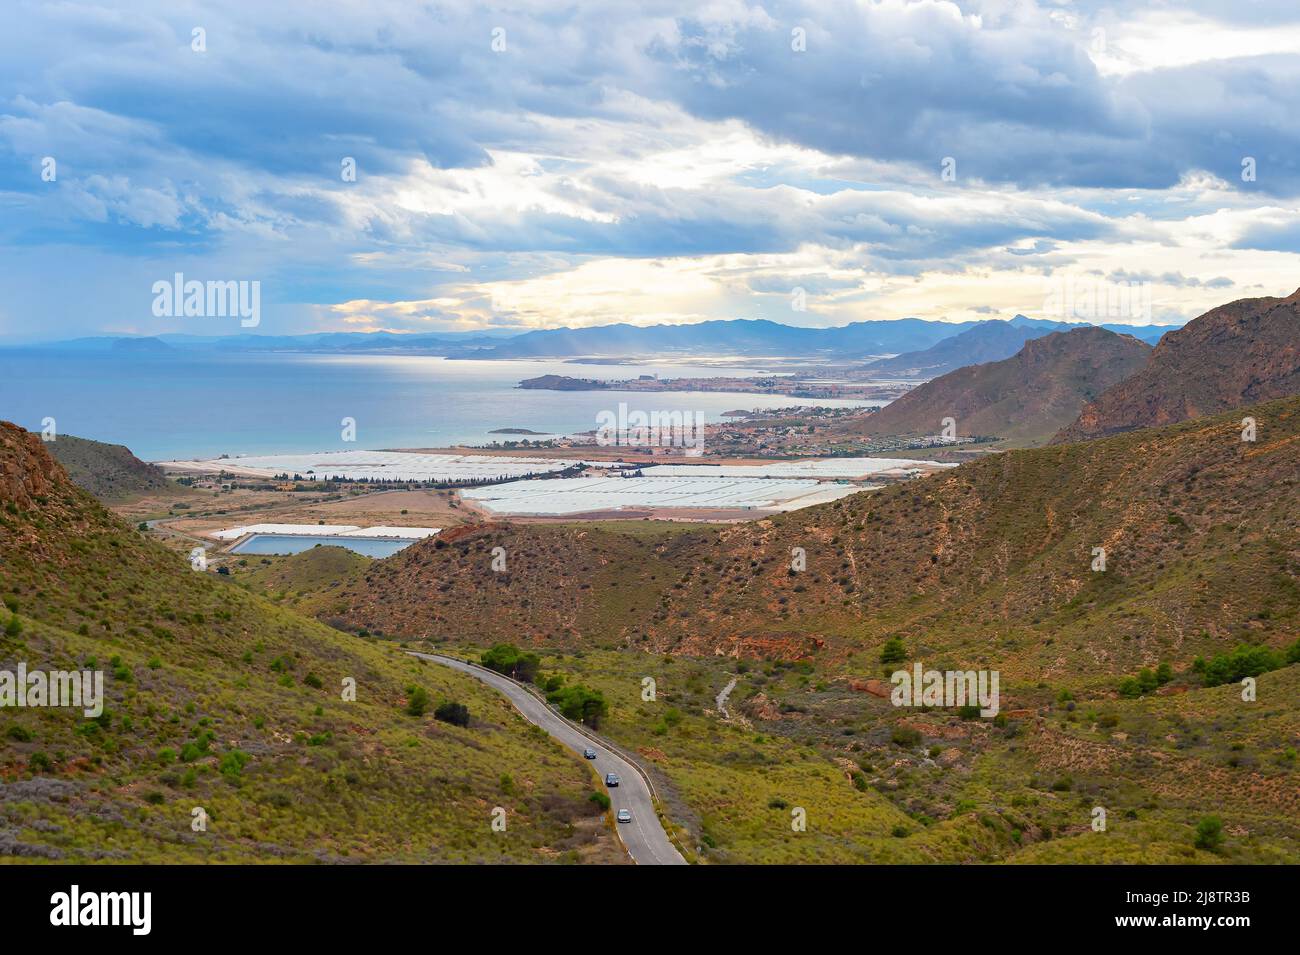 Paysage avec montagnes et village en bord de mer vue sous ciel orageux, sud de l'Espagne Banque D'Images